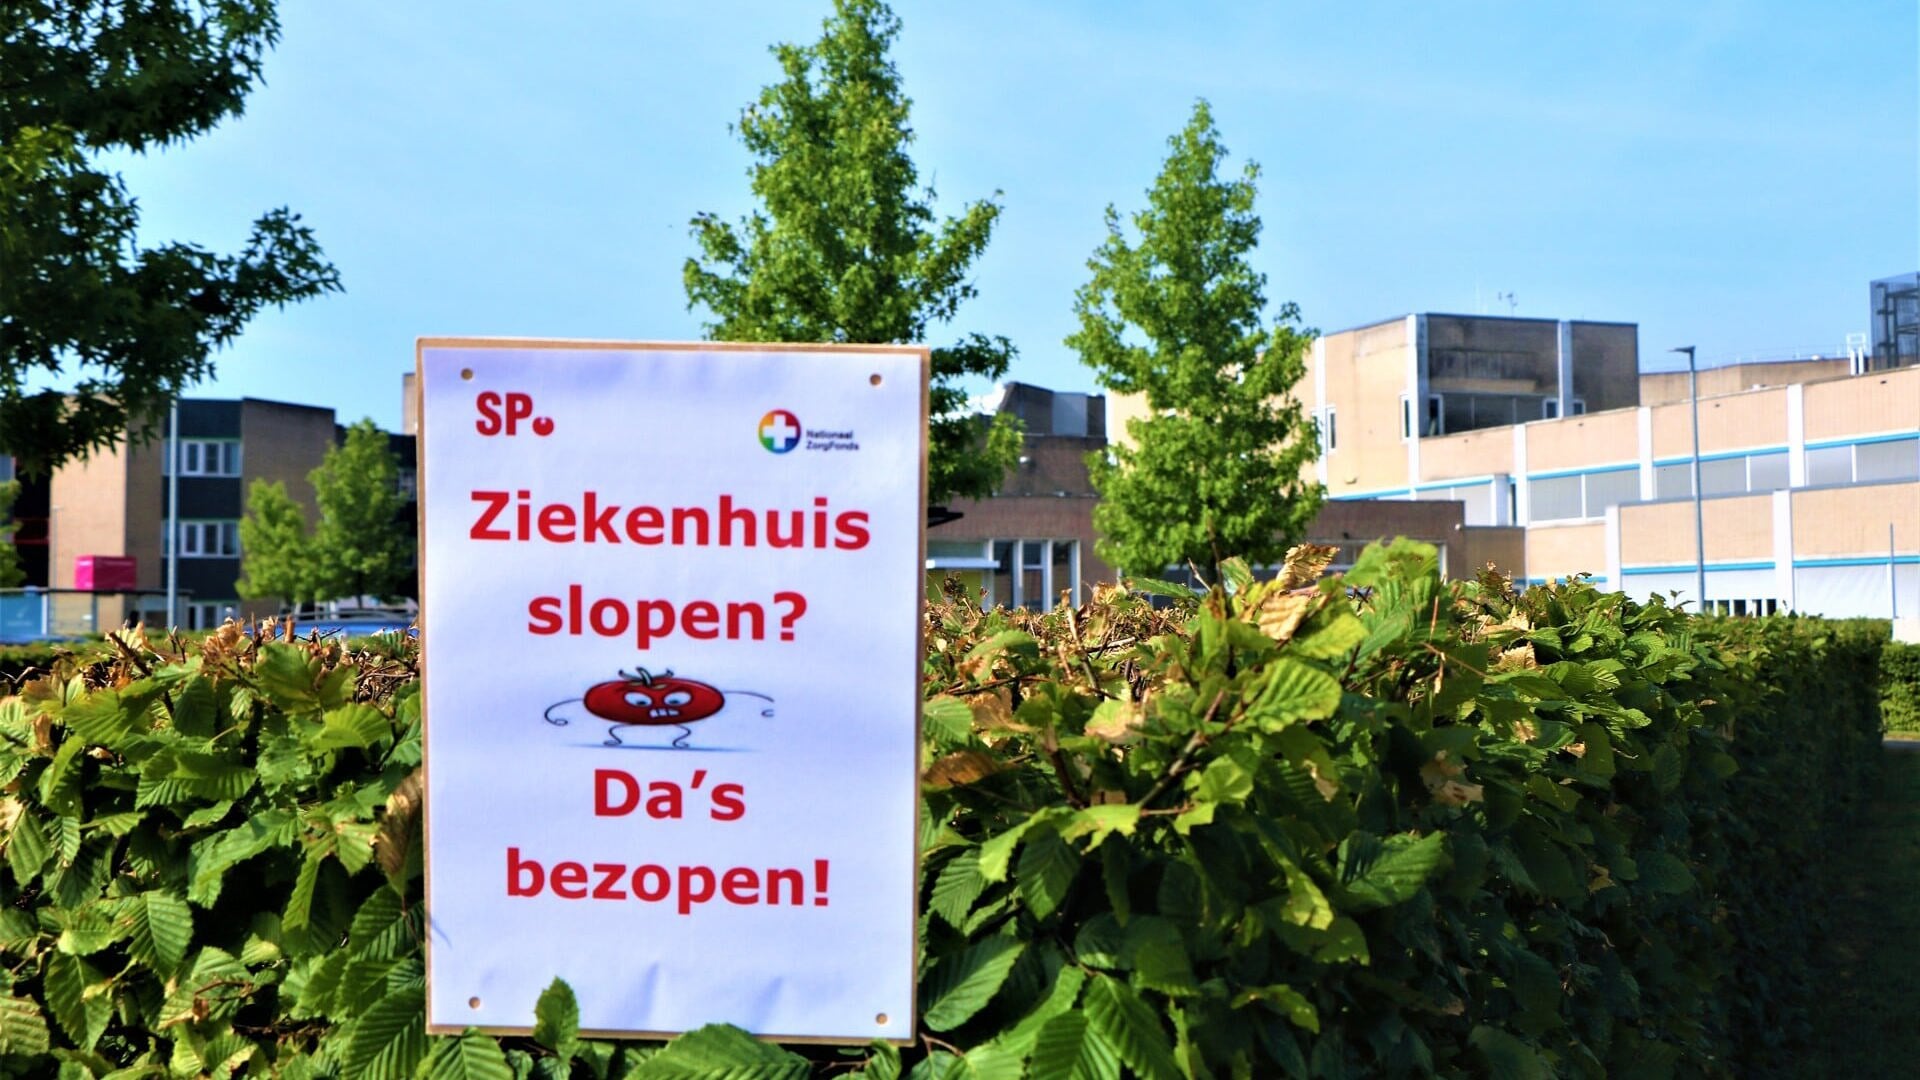 De Fryske Marren: Jouster ziekenhuis zou mooi zijn, maar gaat om breder belang